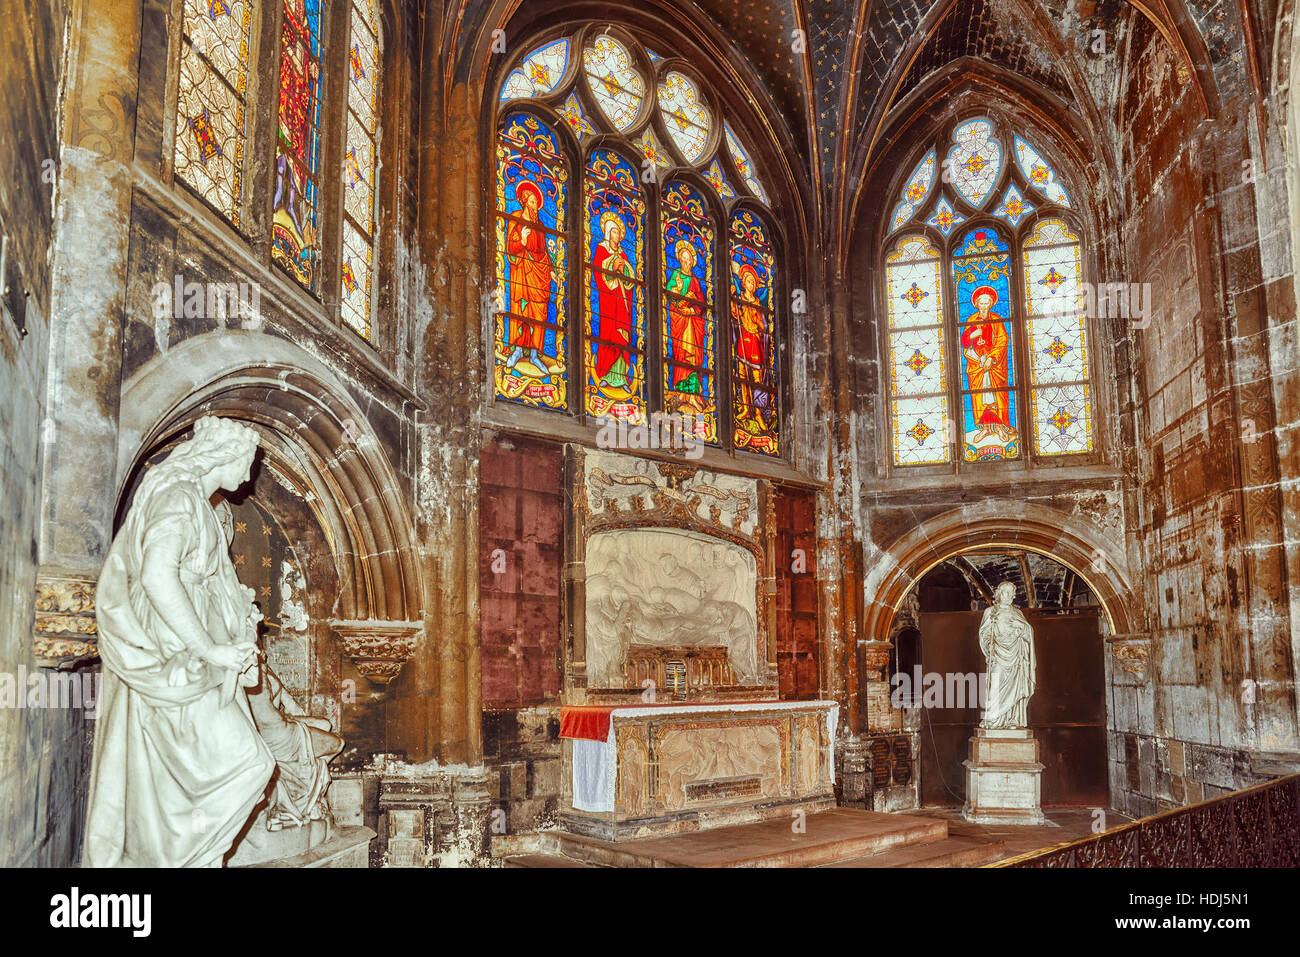 París, Francia - Julio 06, 2016 : cristal SStained dentro de Saint-Germain l'Auxerrois iglesia, cerca del Louvre. Su construcción en época romana, gótica y Renaissanc Foto de stock